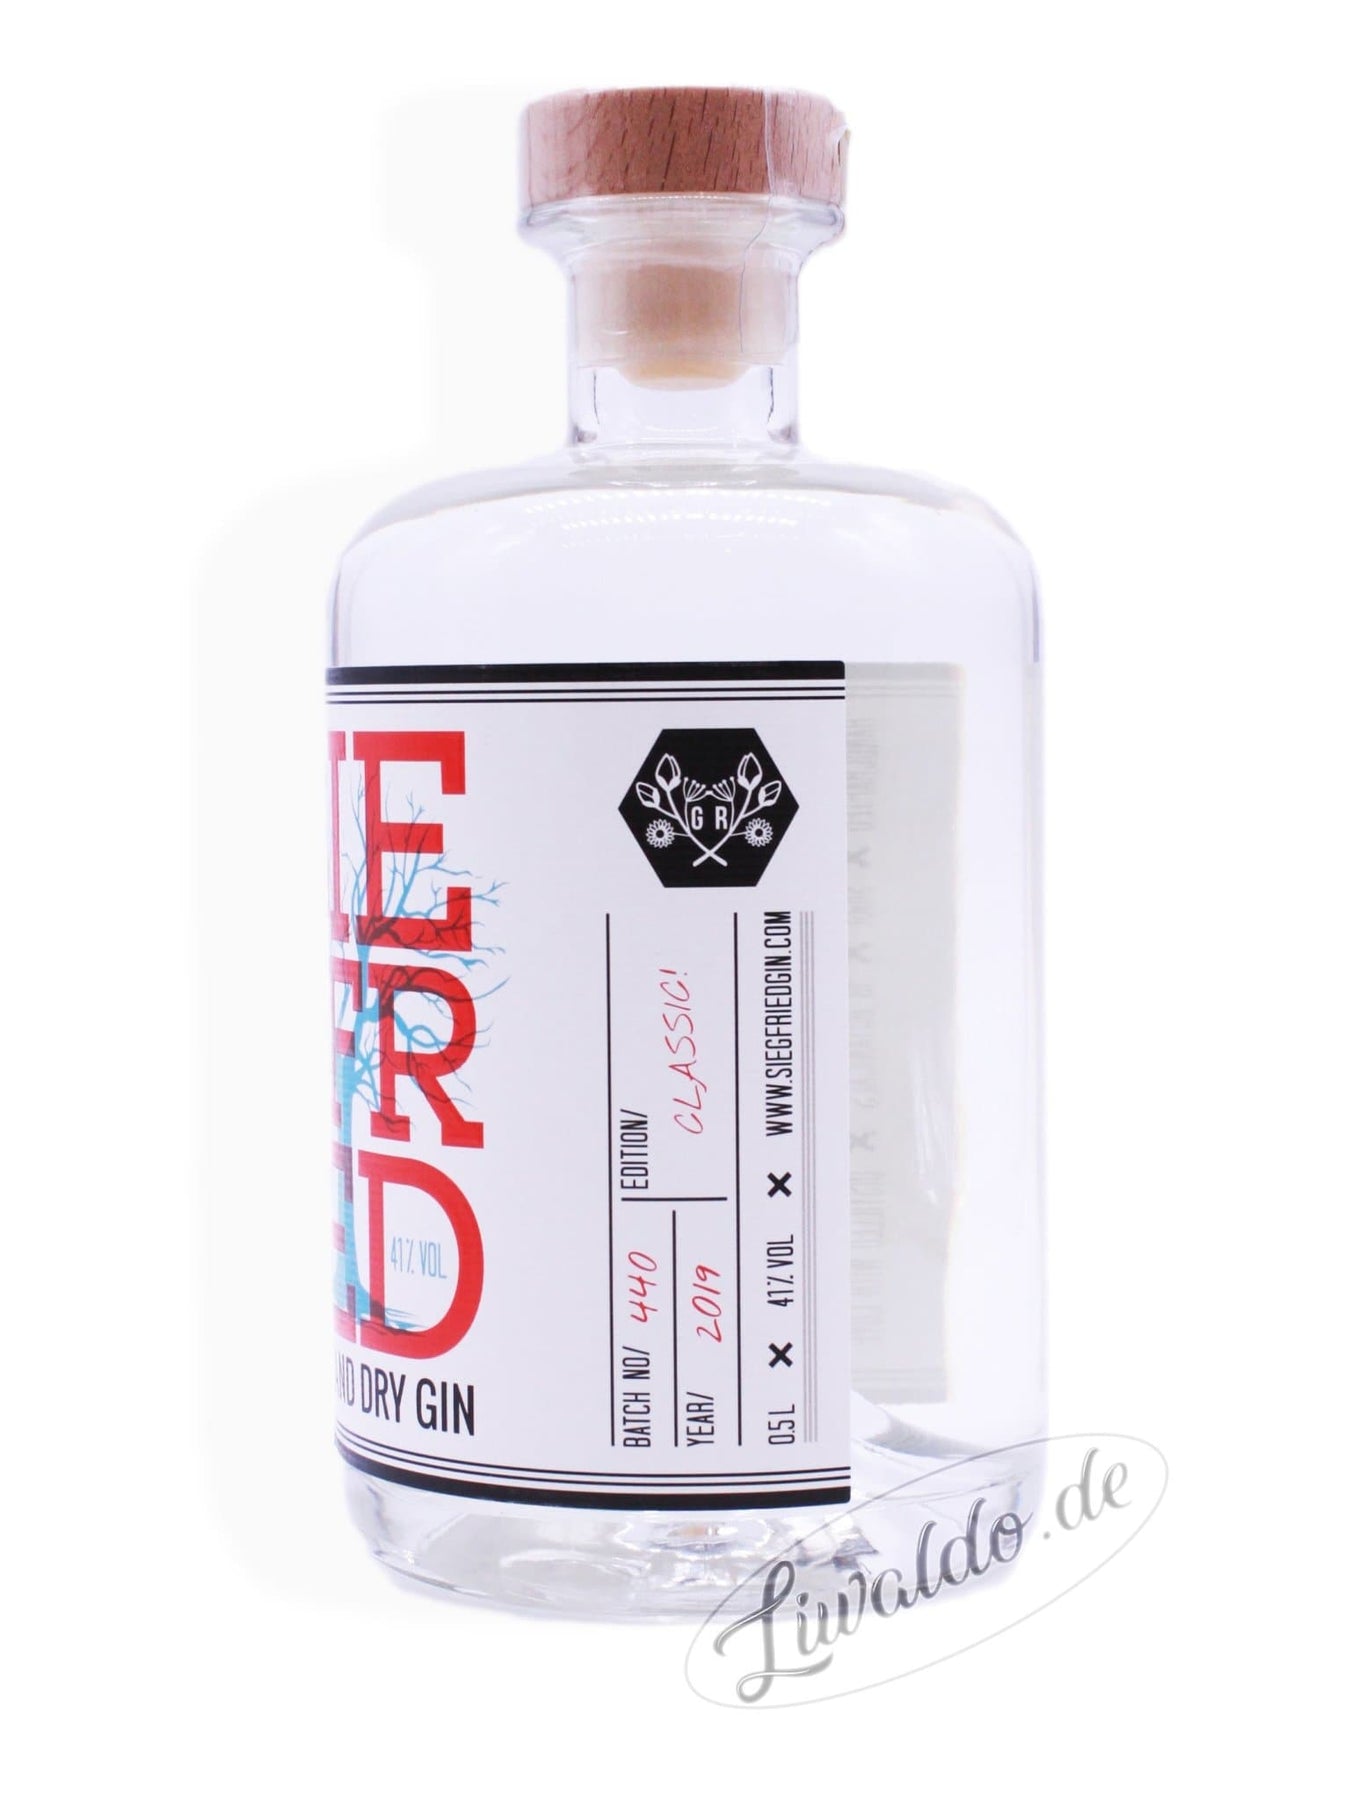 Siegfried Rheinland Dry Gin 41% 0,5 l | Online bei